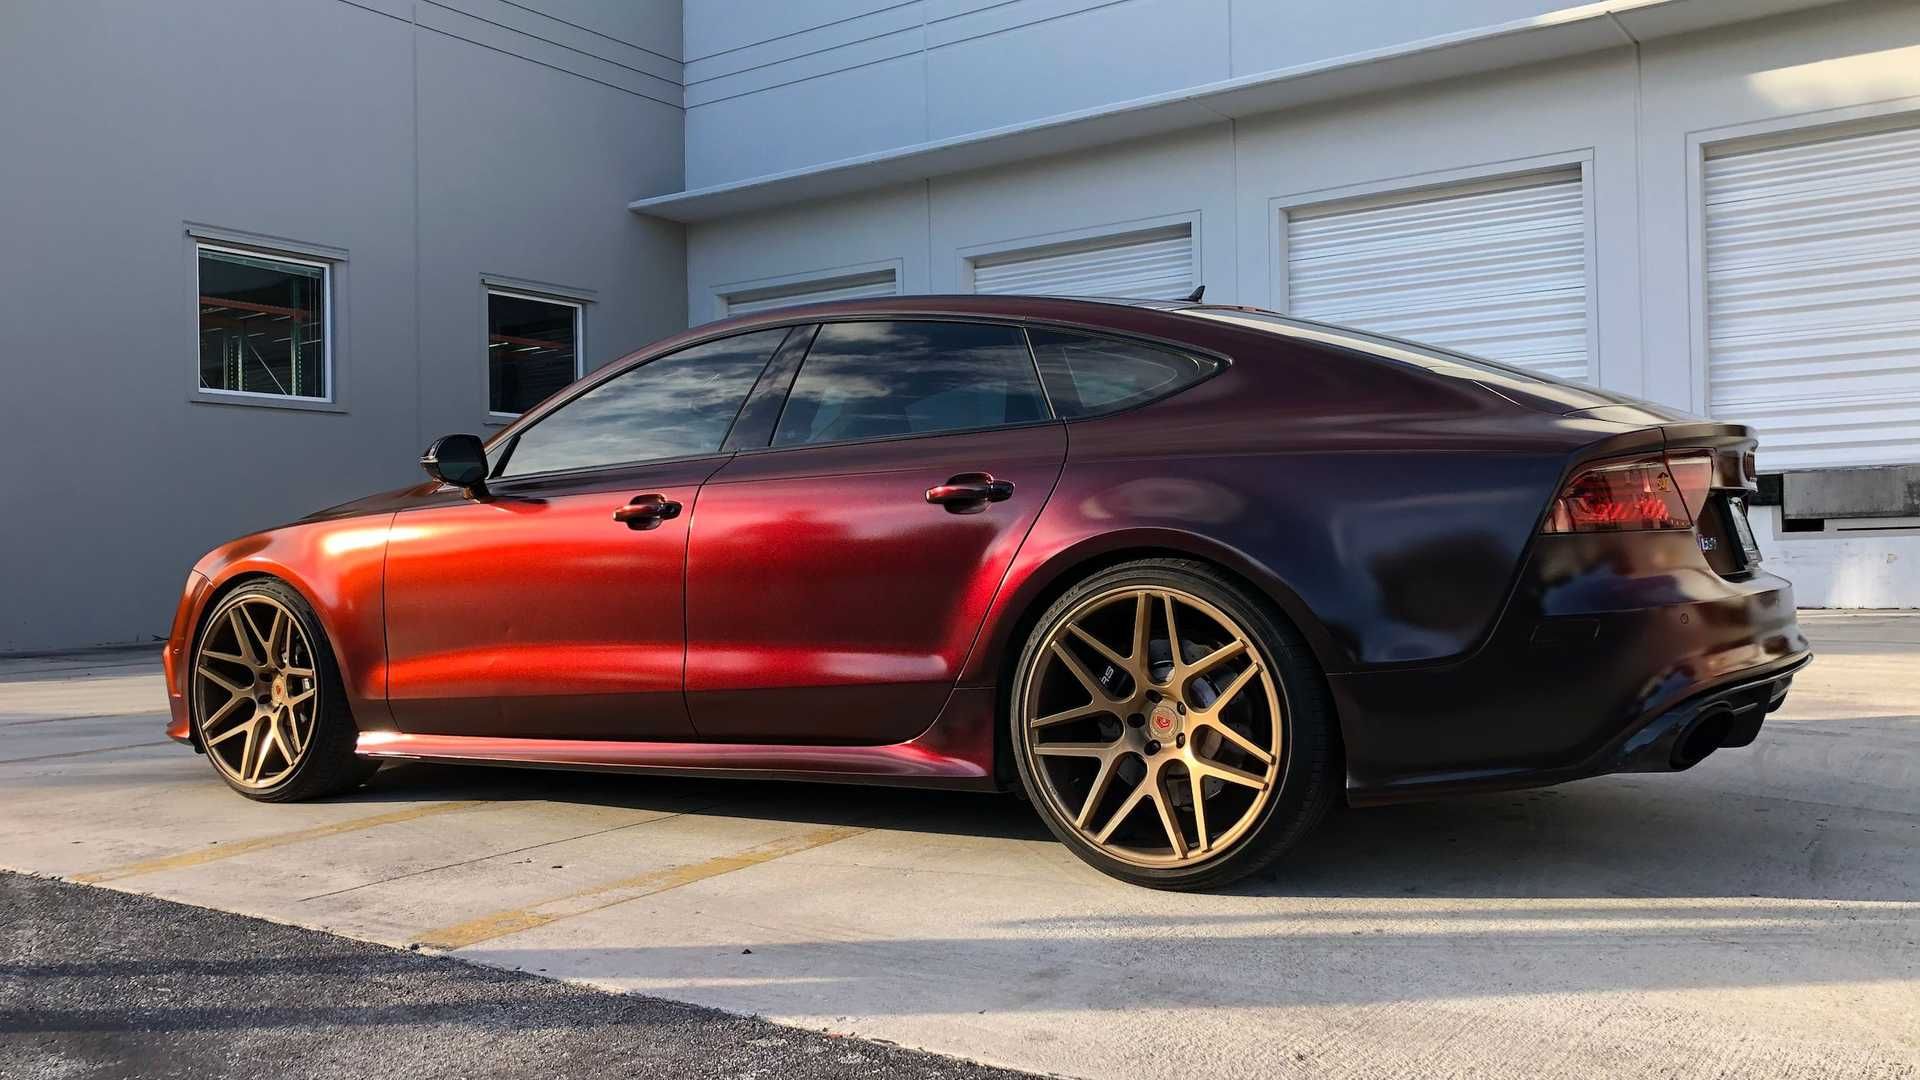 Adepto reacción escucha Es rojo, o es negro? Así luce este Audi RS 7 con su pintura especial